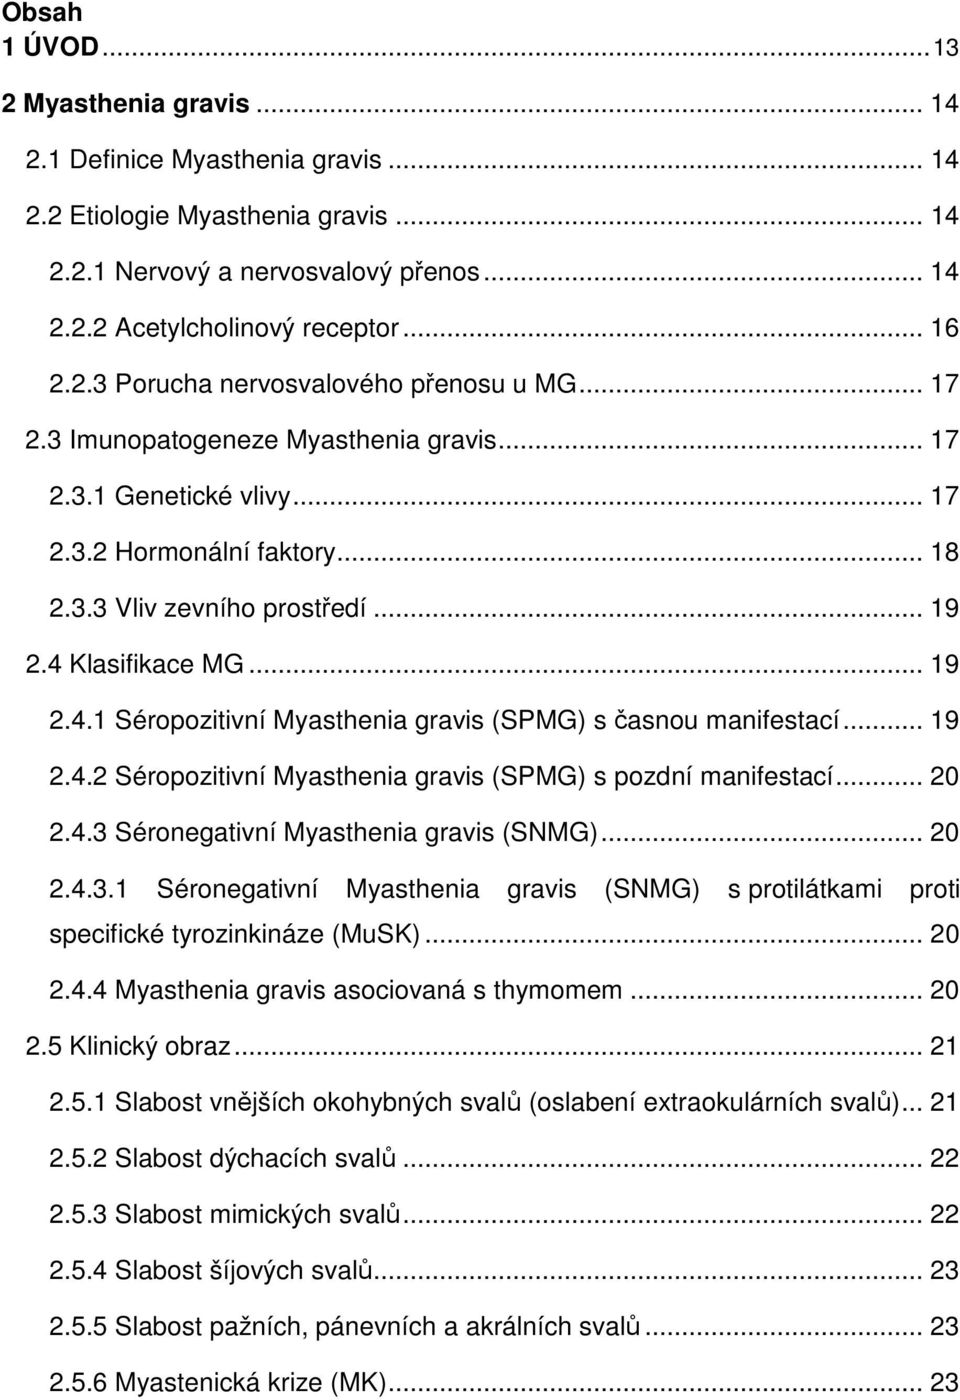 4 Klasifikace MG... 19 2.4.1 Séropozitivní Myasthenia gravis (SPMG) s časnou manifestací... 19 2.4.2 Séropozitivní Myasthenia gravis (SPMG) s pozdní manifestací... 20 2.4.3 Séronegativní Myasthenia gravis (SNMG).